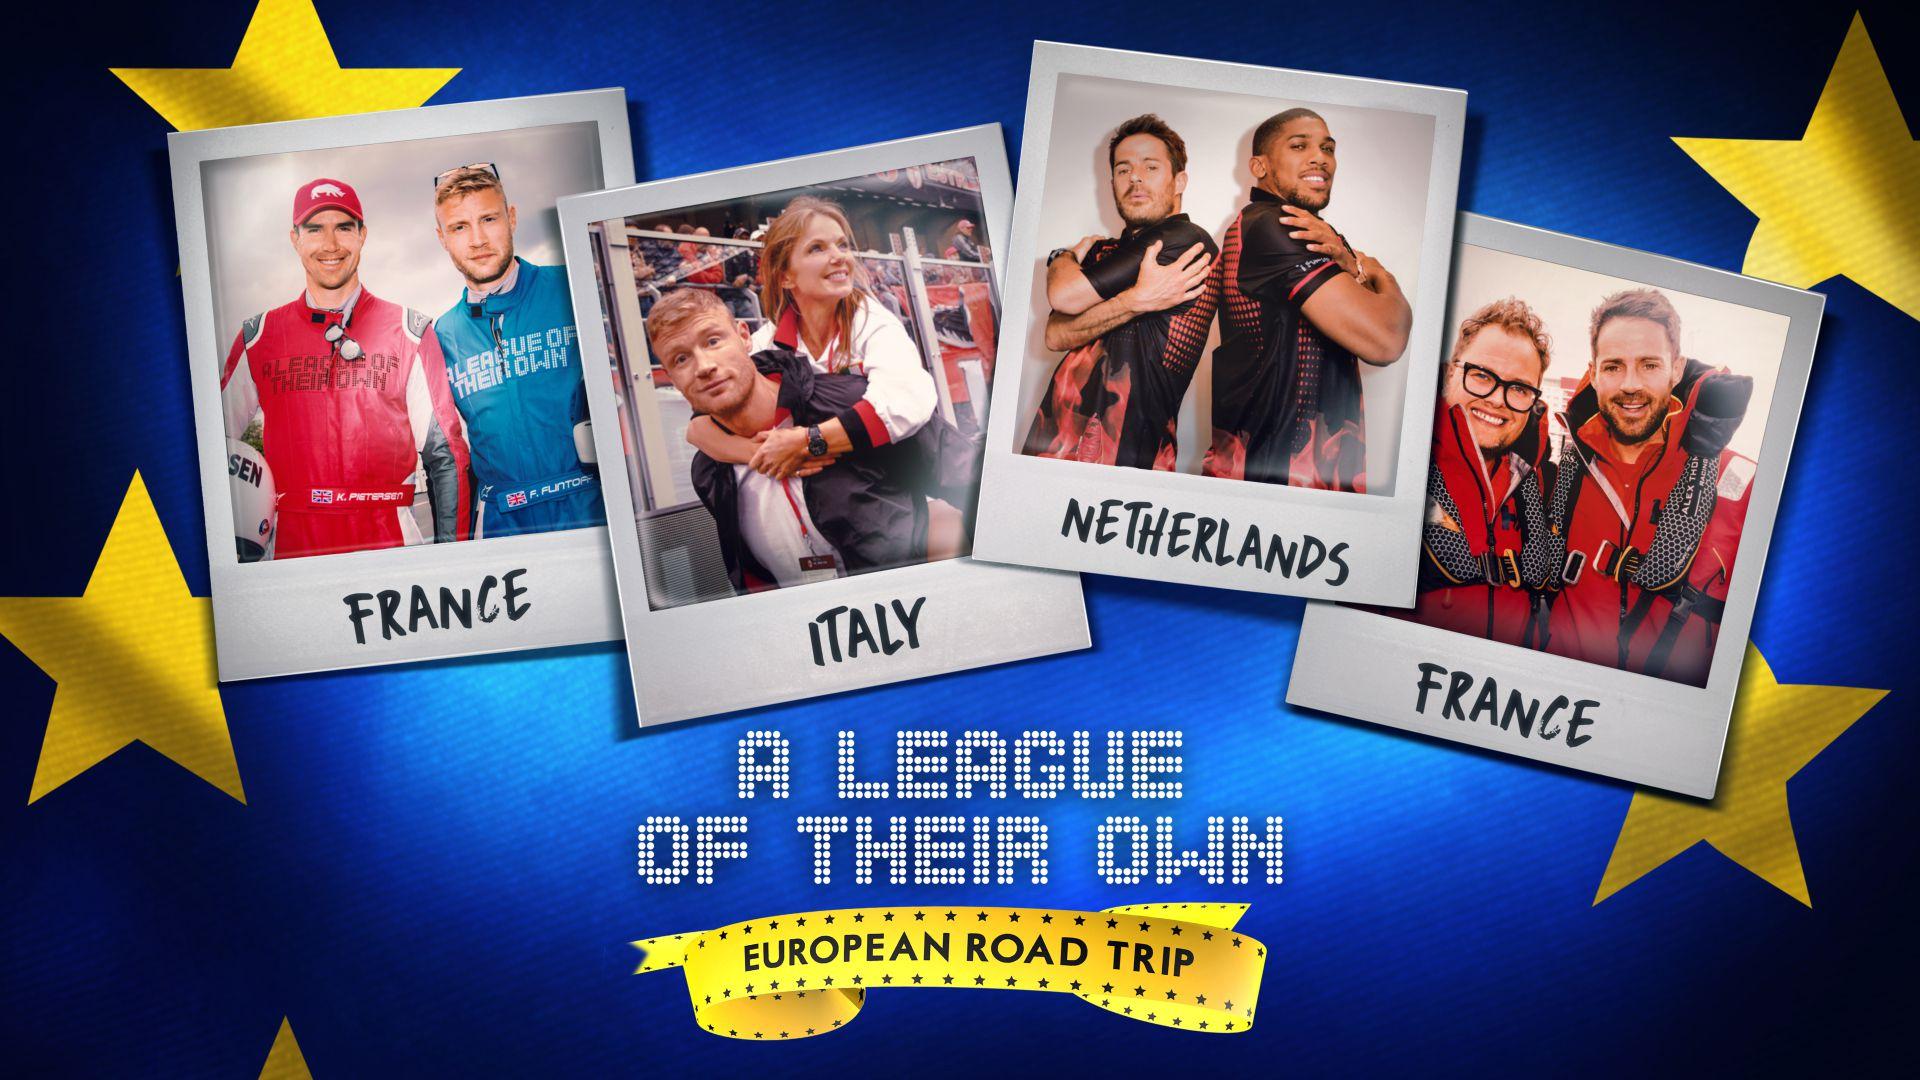 A League of Their Own European Road Trip